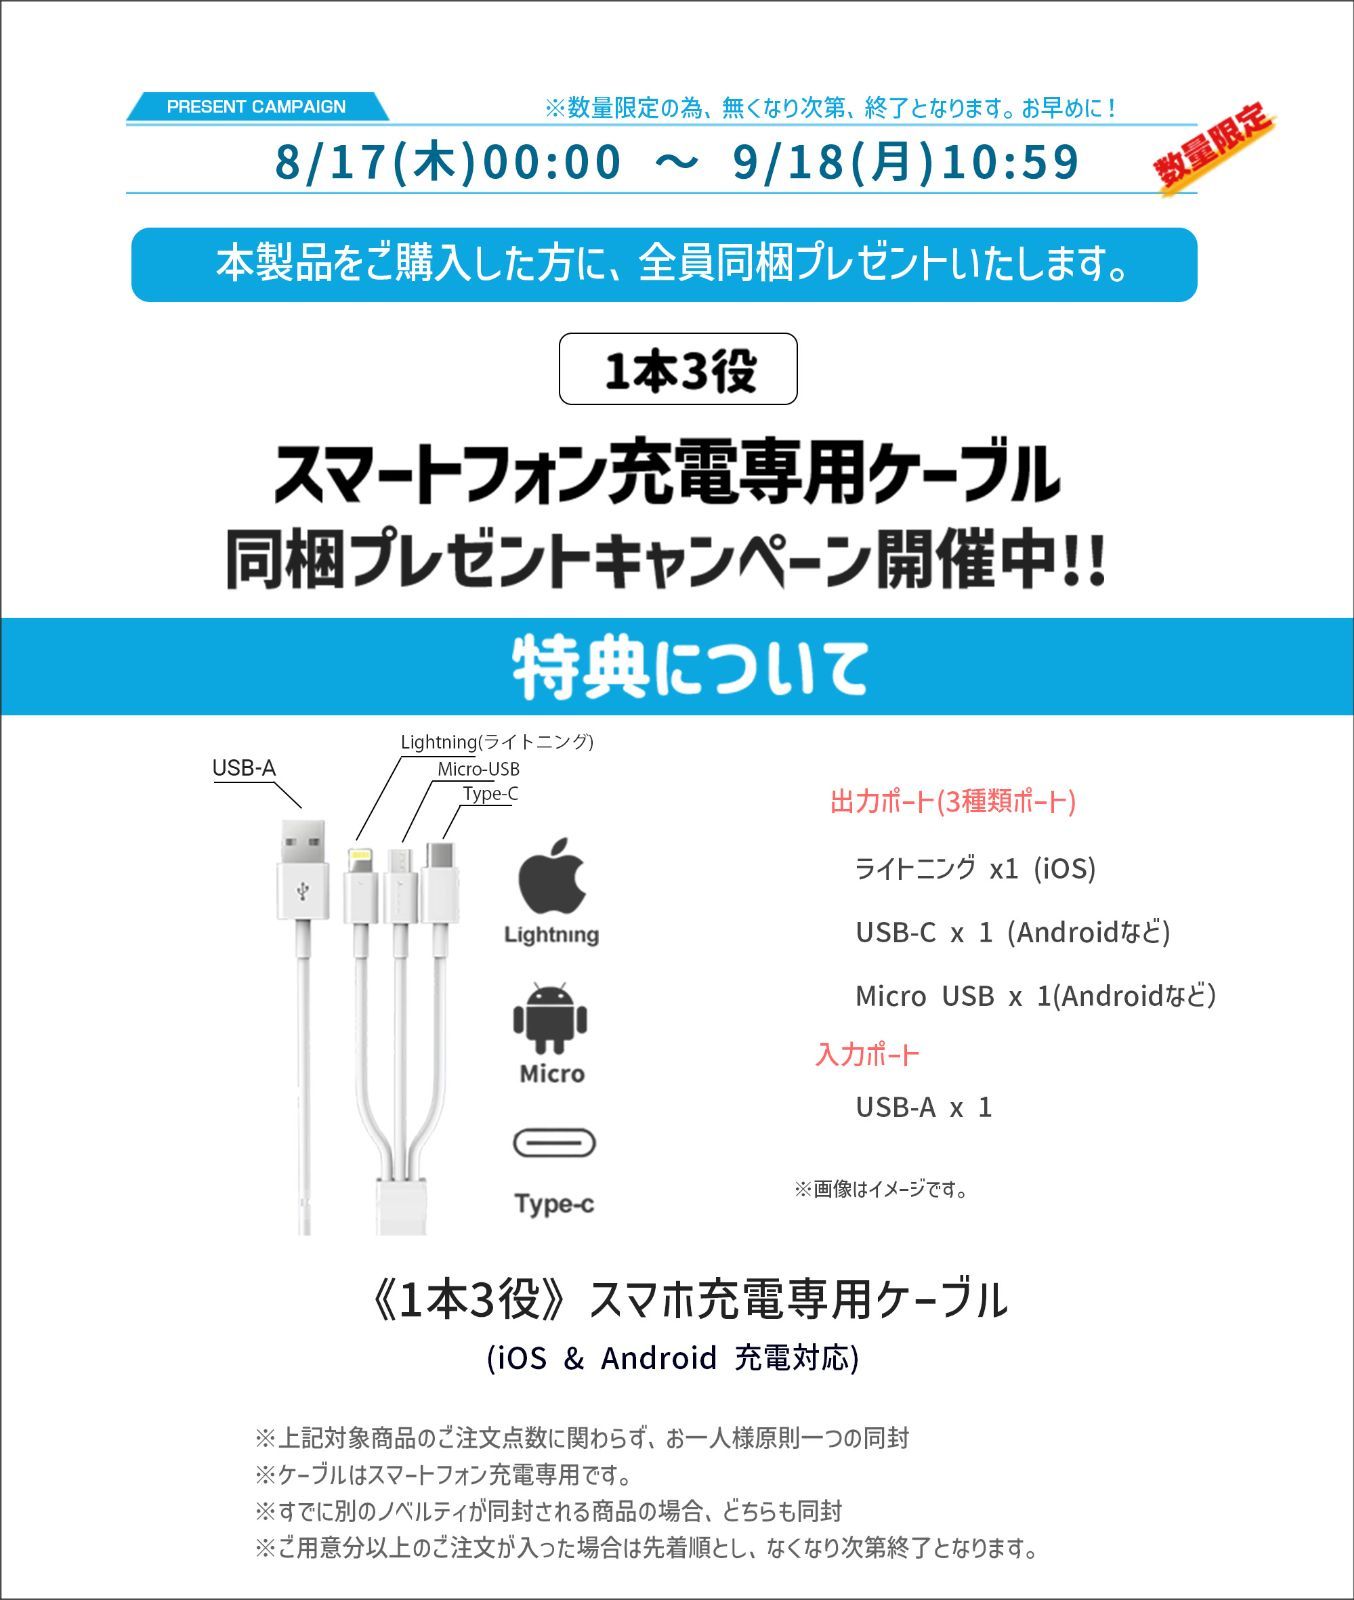 【夏セール中|日本正規販売店|2年保証|特典付き】 Emeet M3 スピーカーフォン 会議用 Bluetooth対応 マスピーカー オンライン会議 USB 全方向集音 LED指示 ノイズキャンセリング テレワーク  Bluetooth Zoom イミート-1